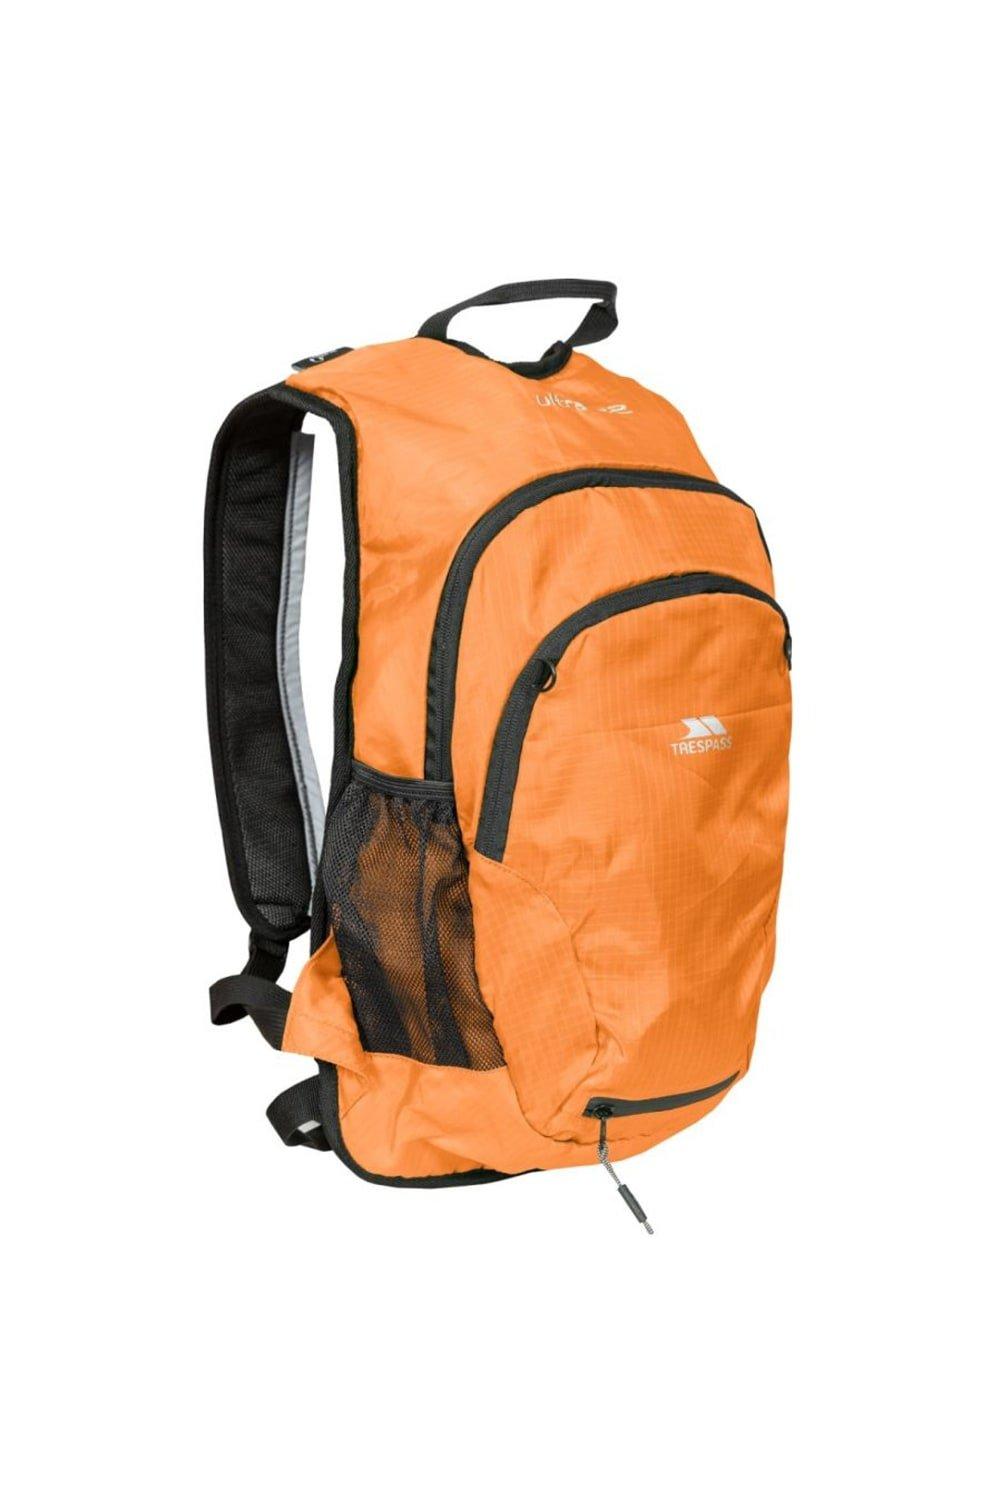 Ultra 22 Light Rucksack Backpack (22 Litres)